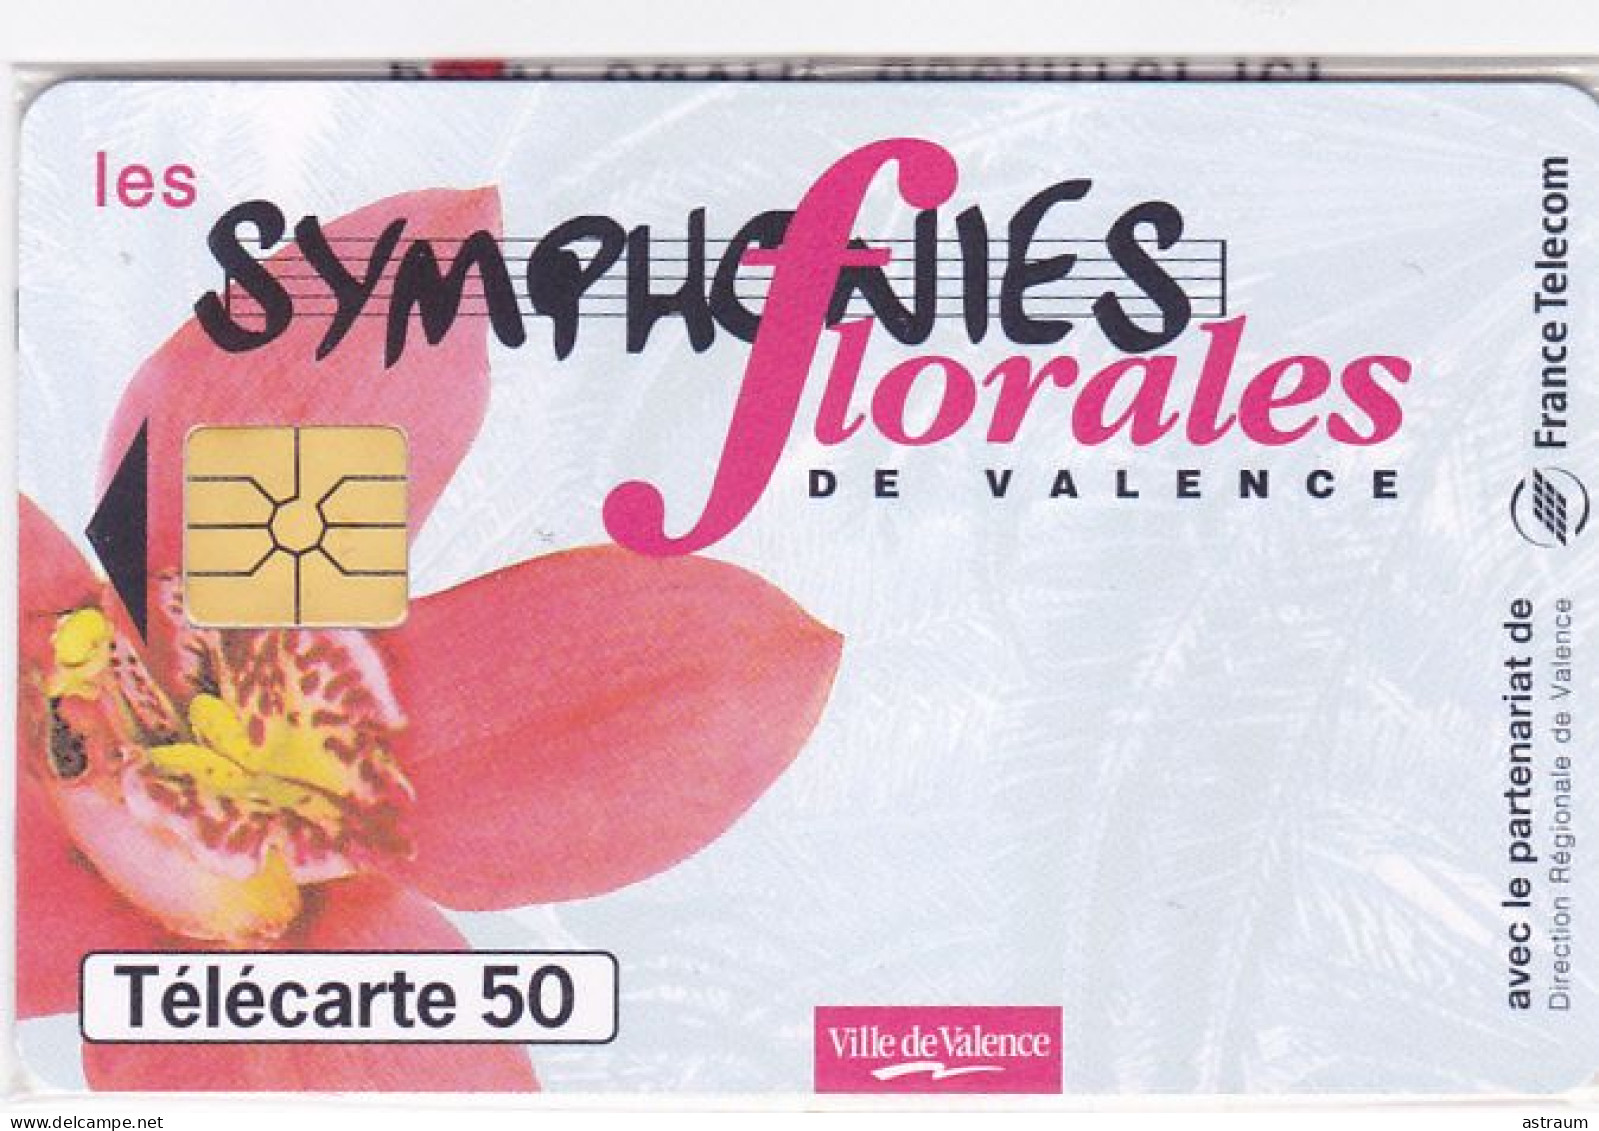 Telecarte Privée / Publique En1634 NSB - Symphonies Florales De Valence - 50 U - Gem - 1997 - 50 Unidades